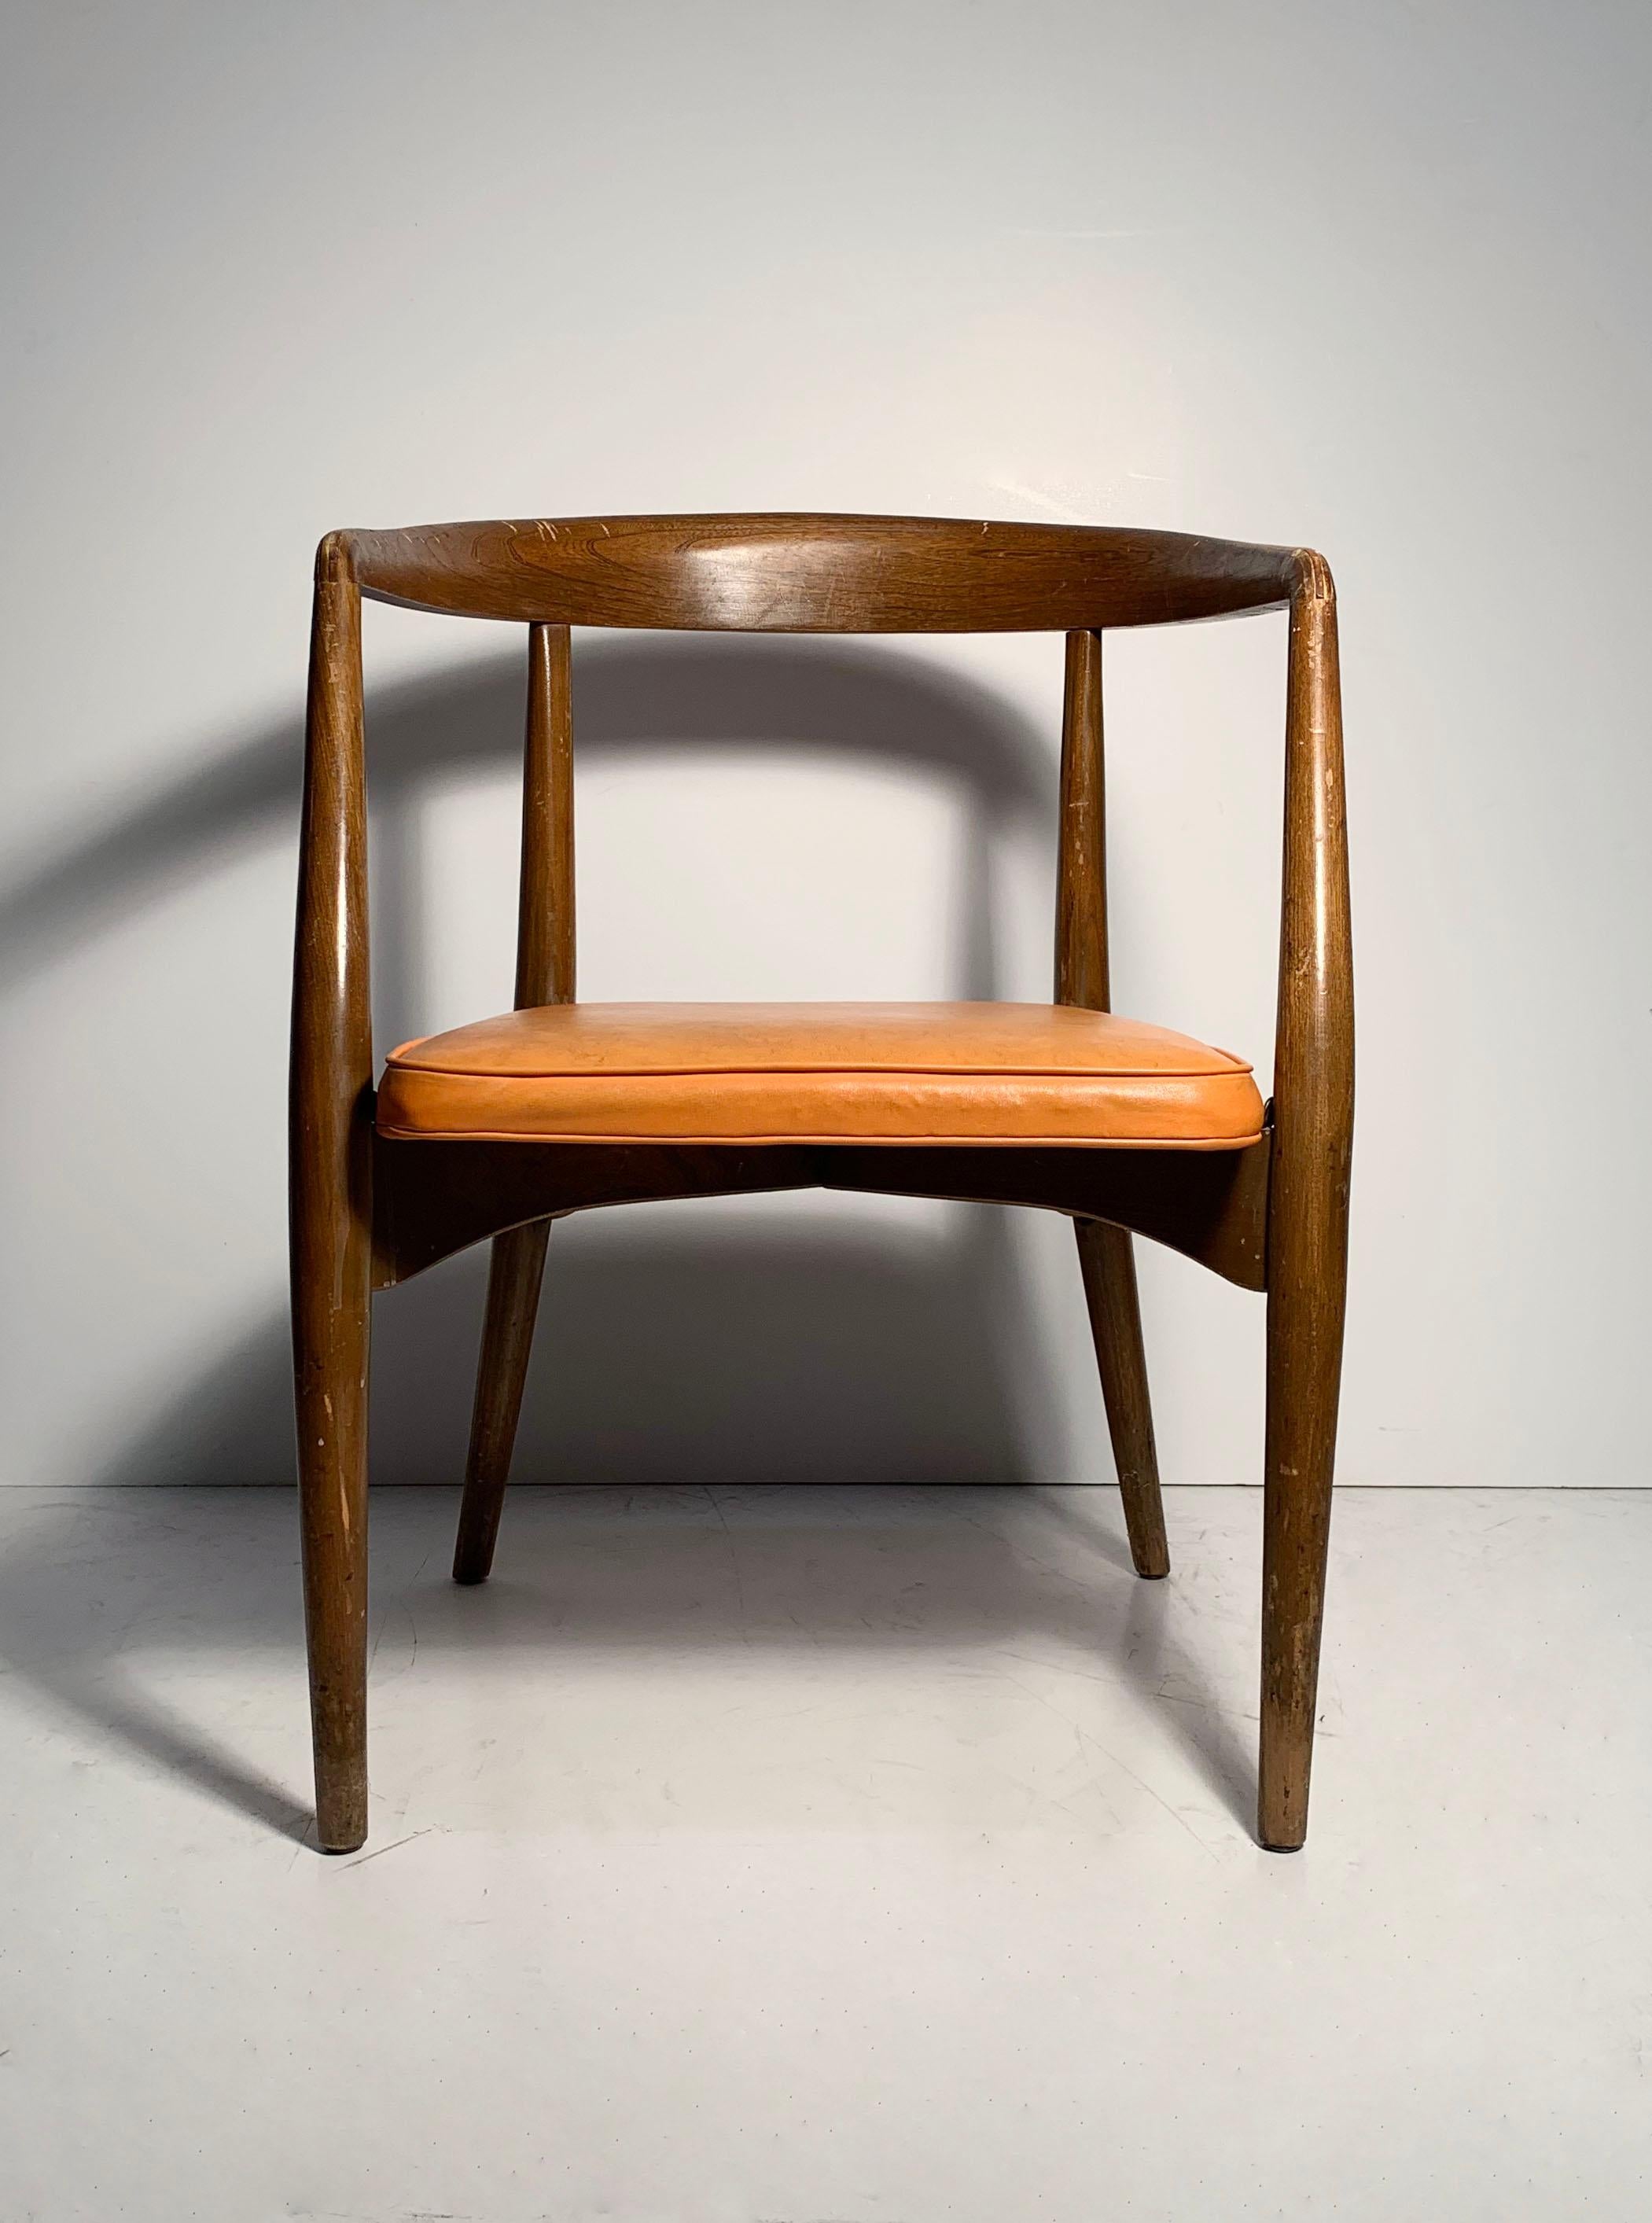 Paire de fauteuils vintage Lawrence Peabody.
Style de Paul McCobb Milo Baughman